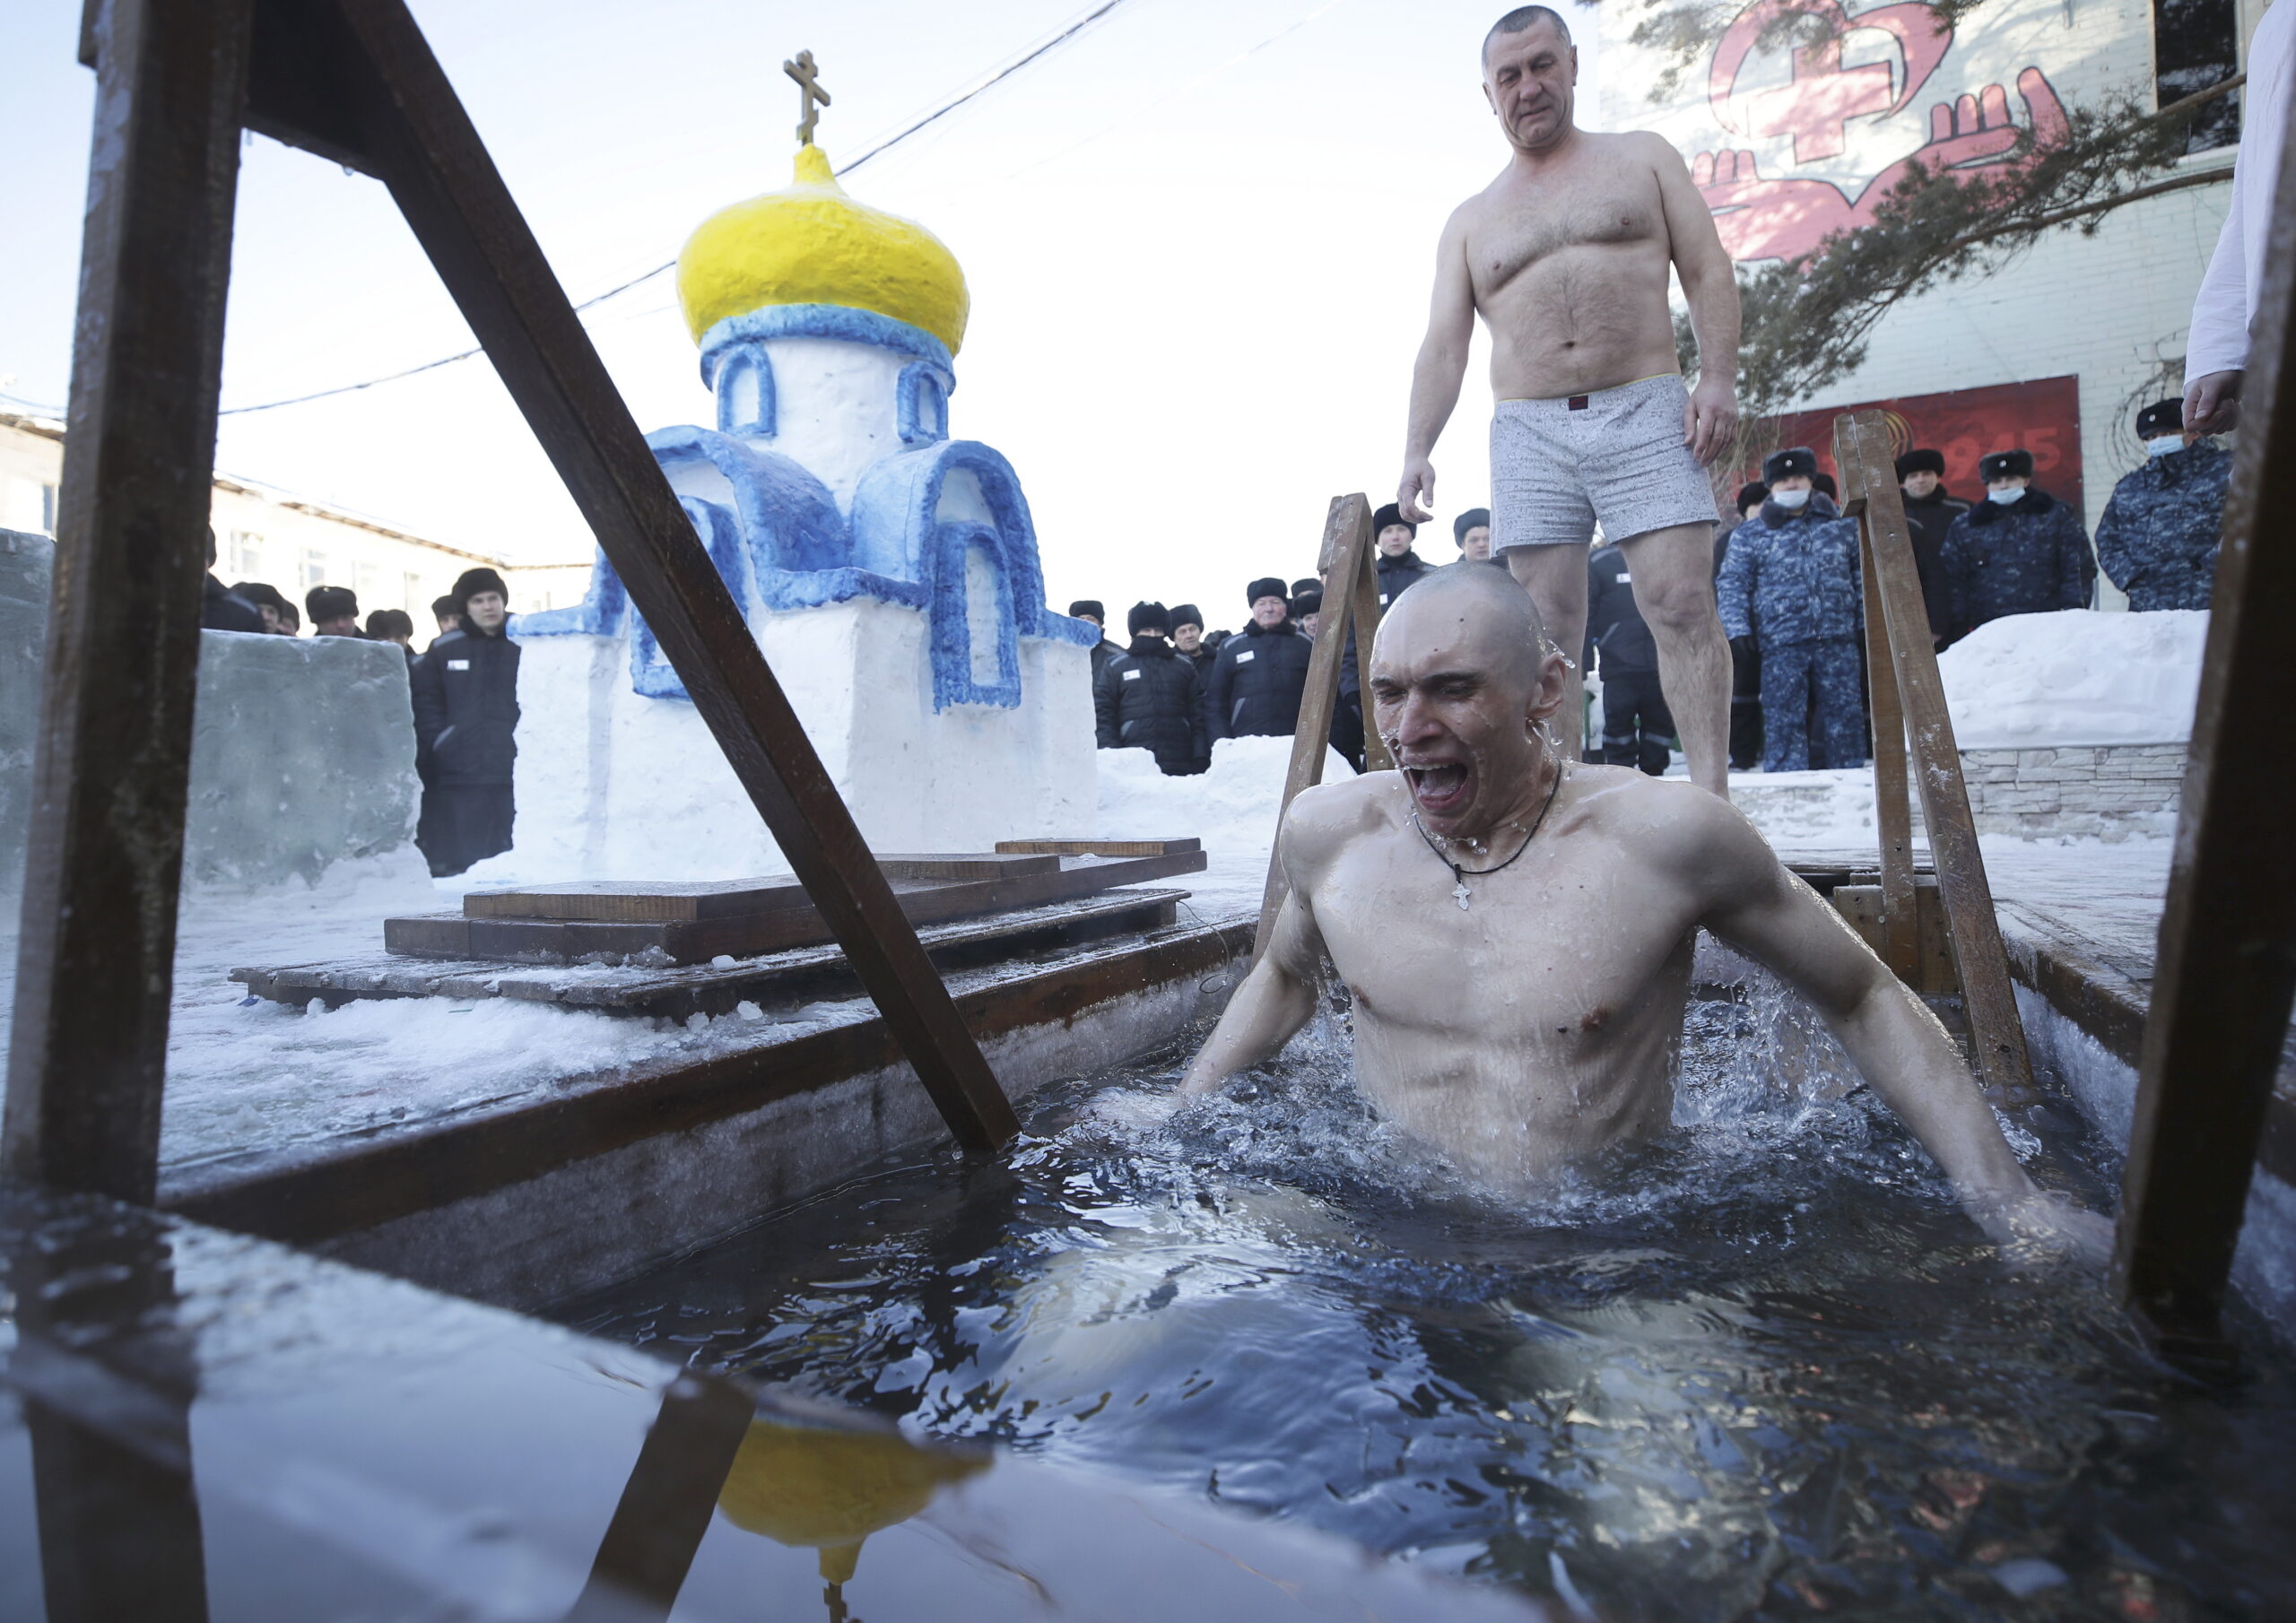 Заключенные колонии в Новосибирске принимают участие в крещенских купаниях. Фото Kirill Kukhmar / TASS / Scanpix / Leta